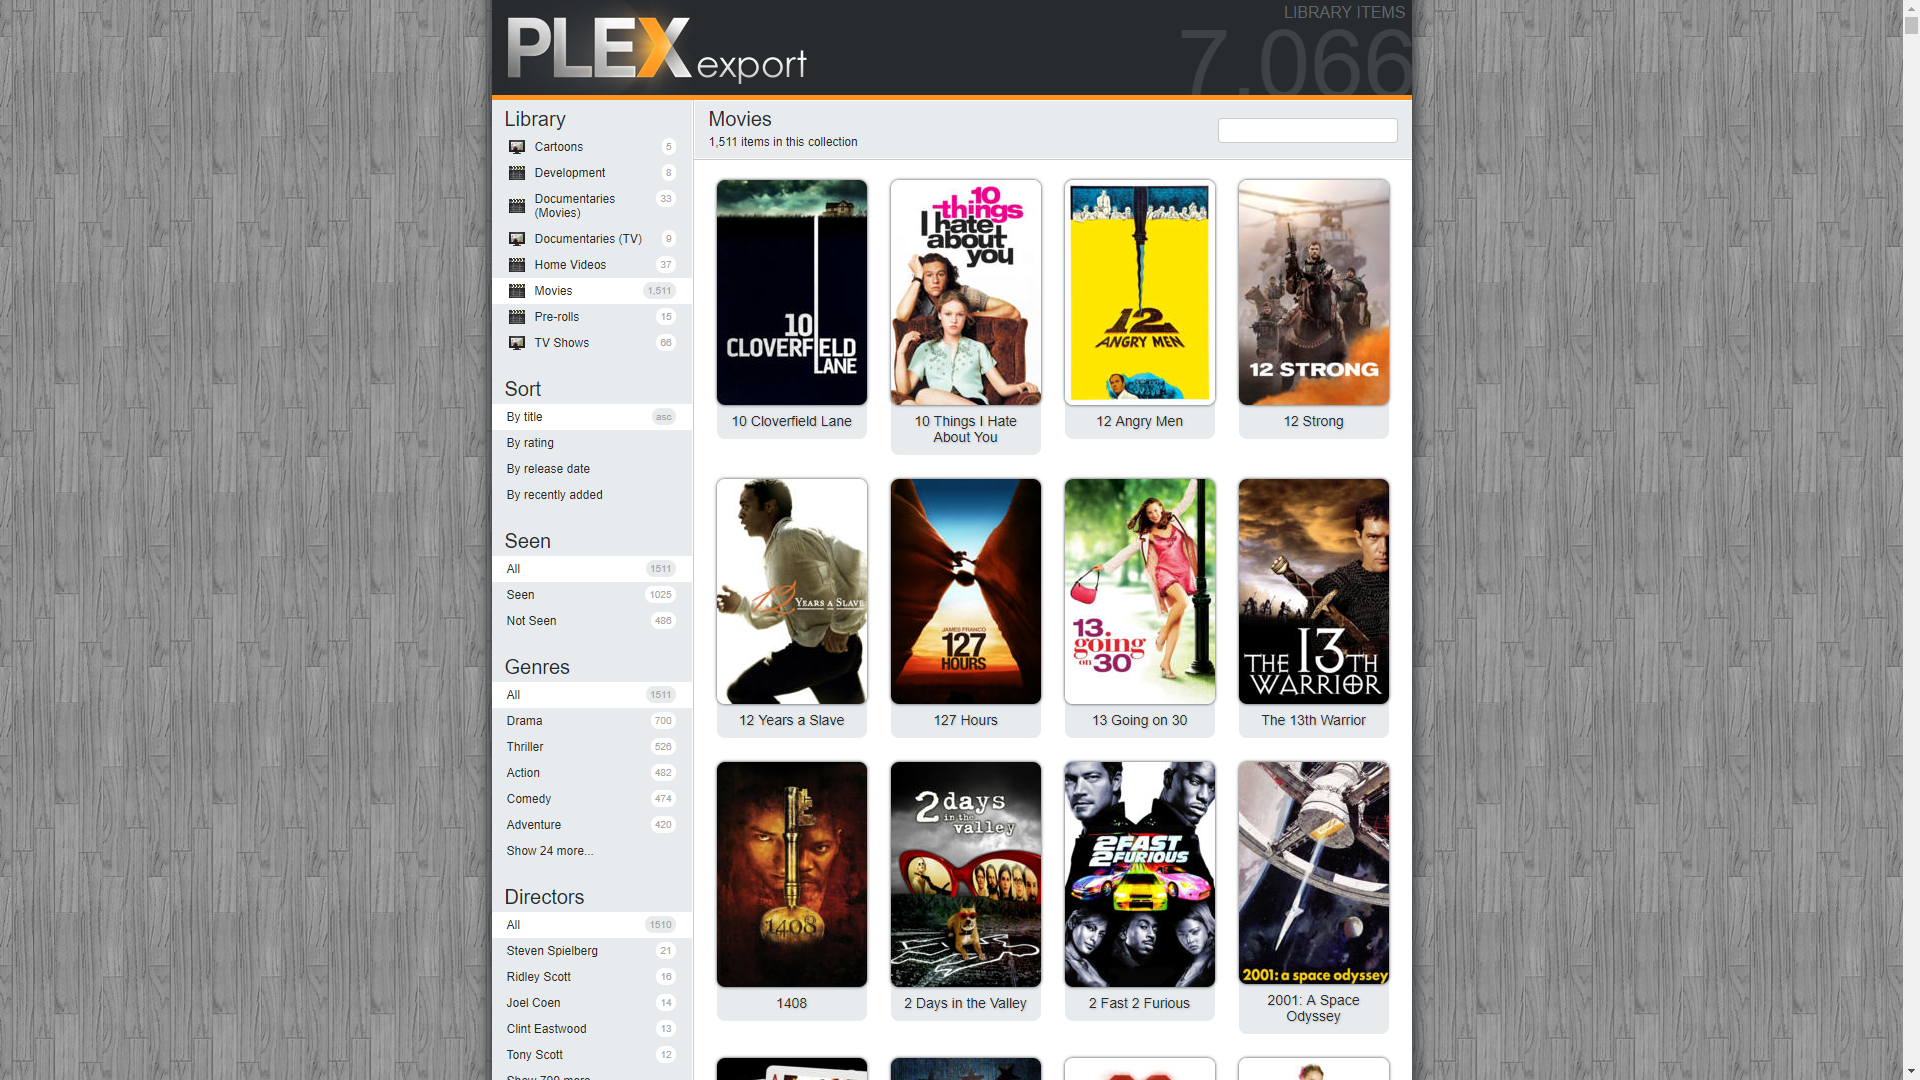 Plex Export